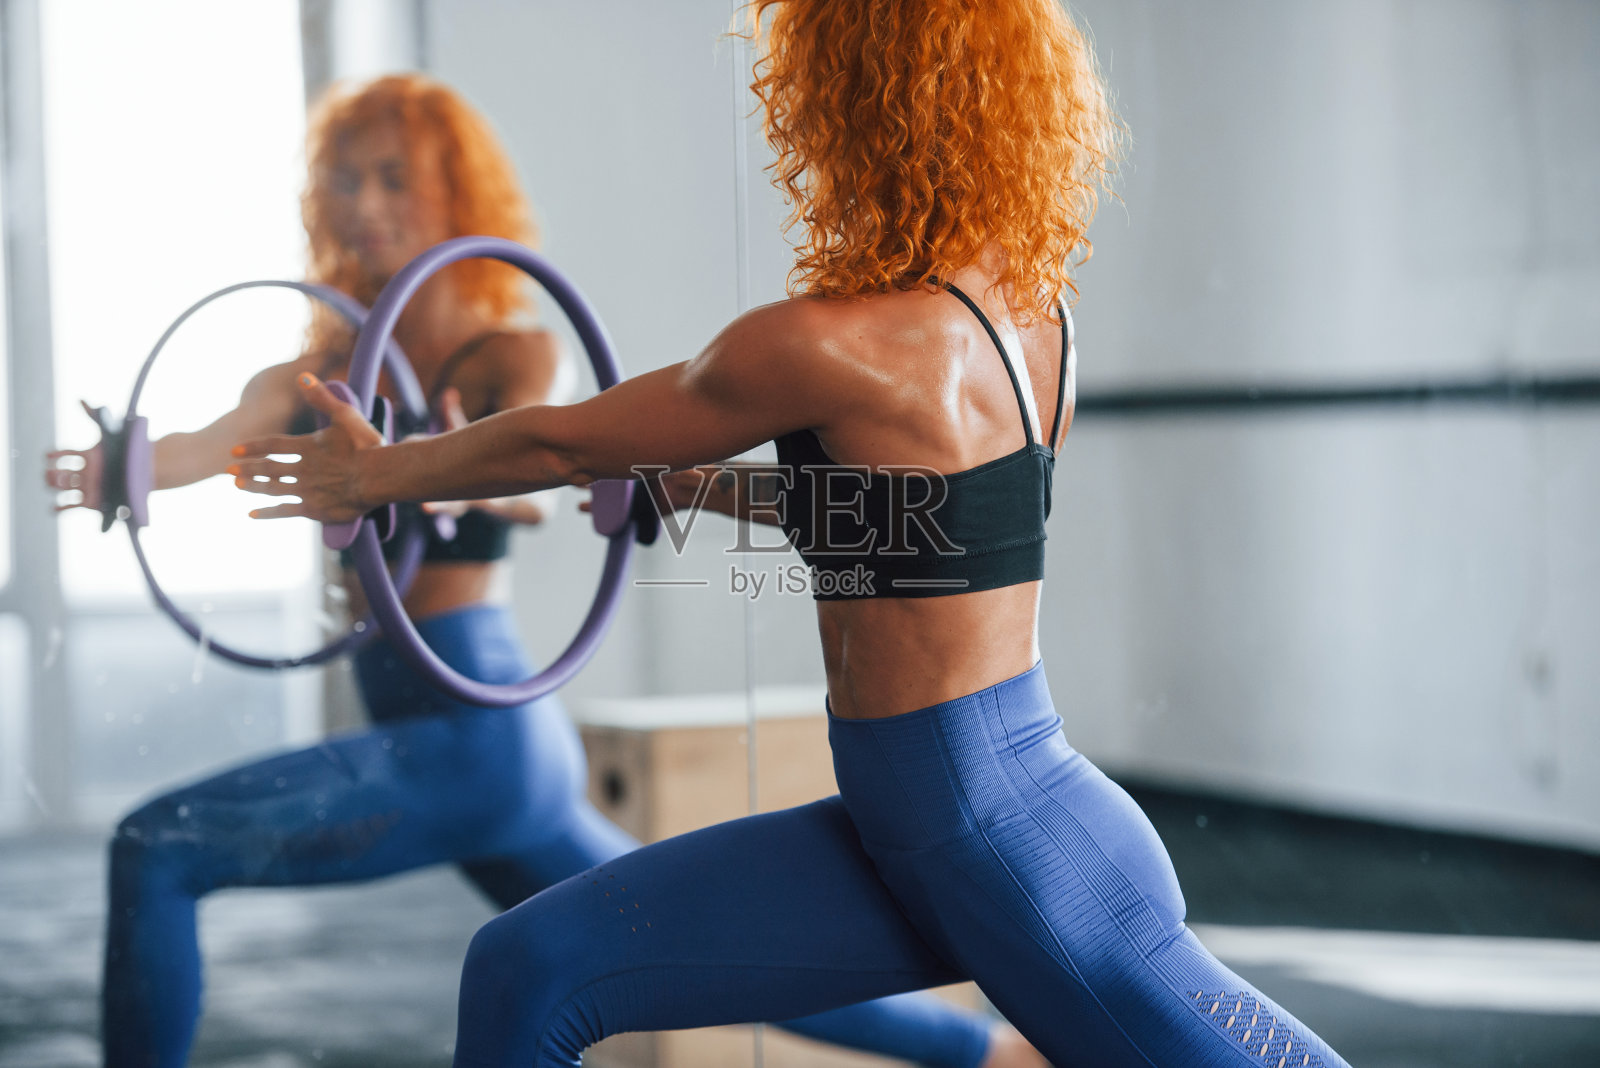 有特殊设备。喜欢运动的红发女孩白天去健身房健身。肌肉发达的身体类型照片摄影图片